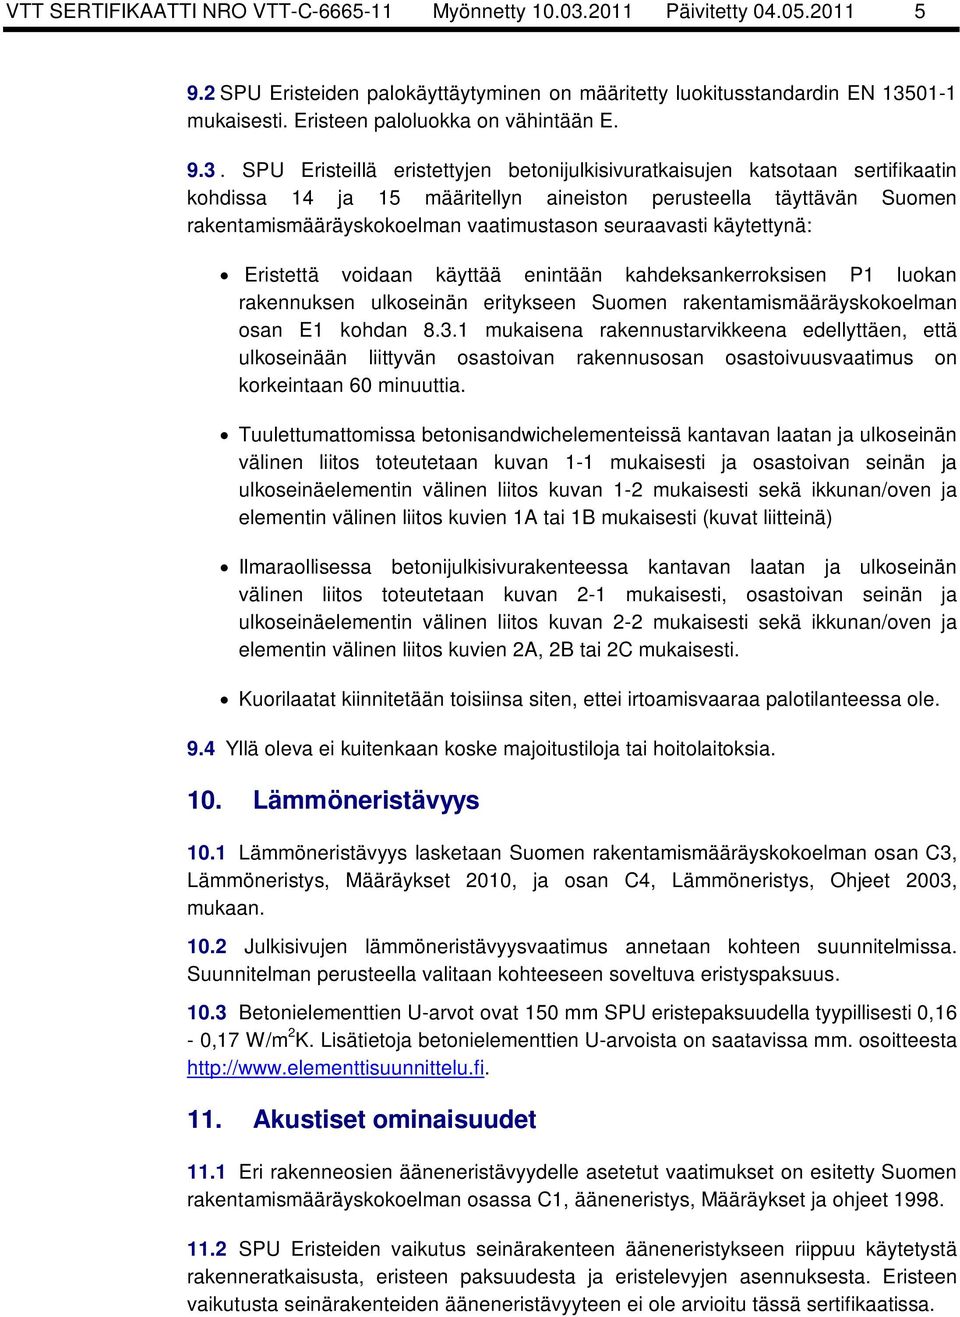 SPU Eristeillä eristettyjen betonijulkisivuratkaisujen katsotaan sertifikaatin kohdissa 14 ja 15 määritellyn aineiston perusteella täyttävän Suomen rakentamismääräyskokoelman vaatimustason